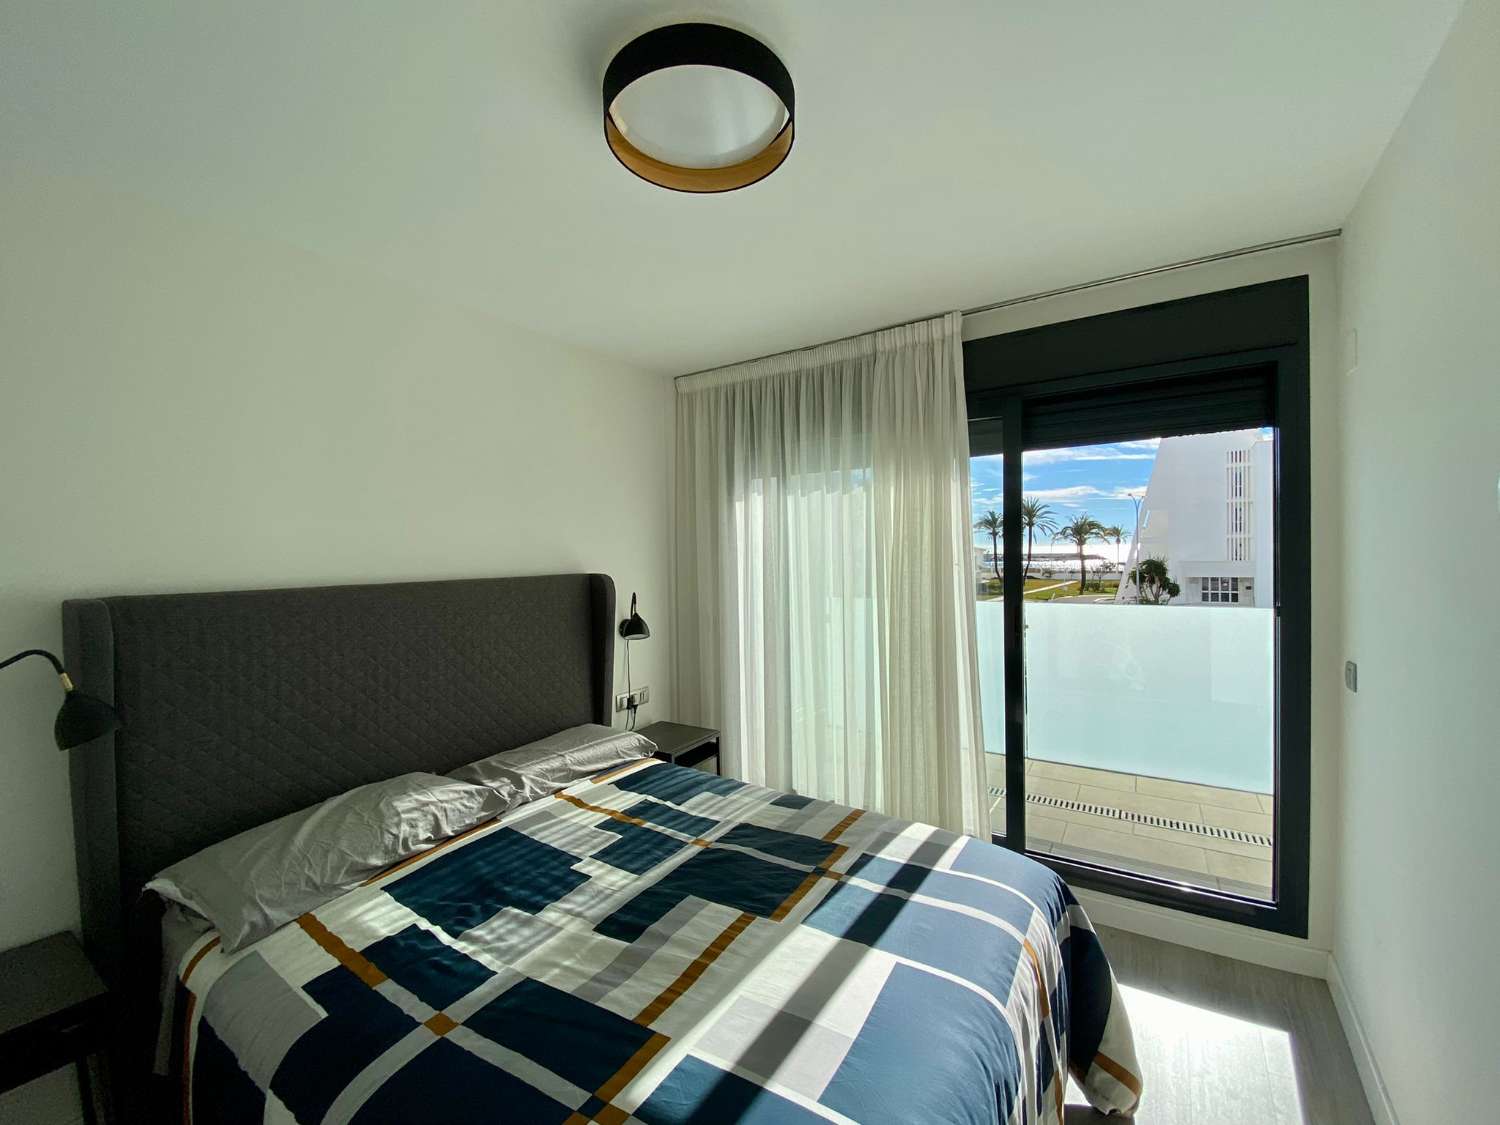 Appartement de deux chambres, avec terrasse et piscine commune à côté de la plage de Puerto de la Caleta